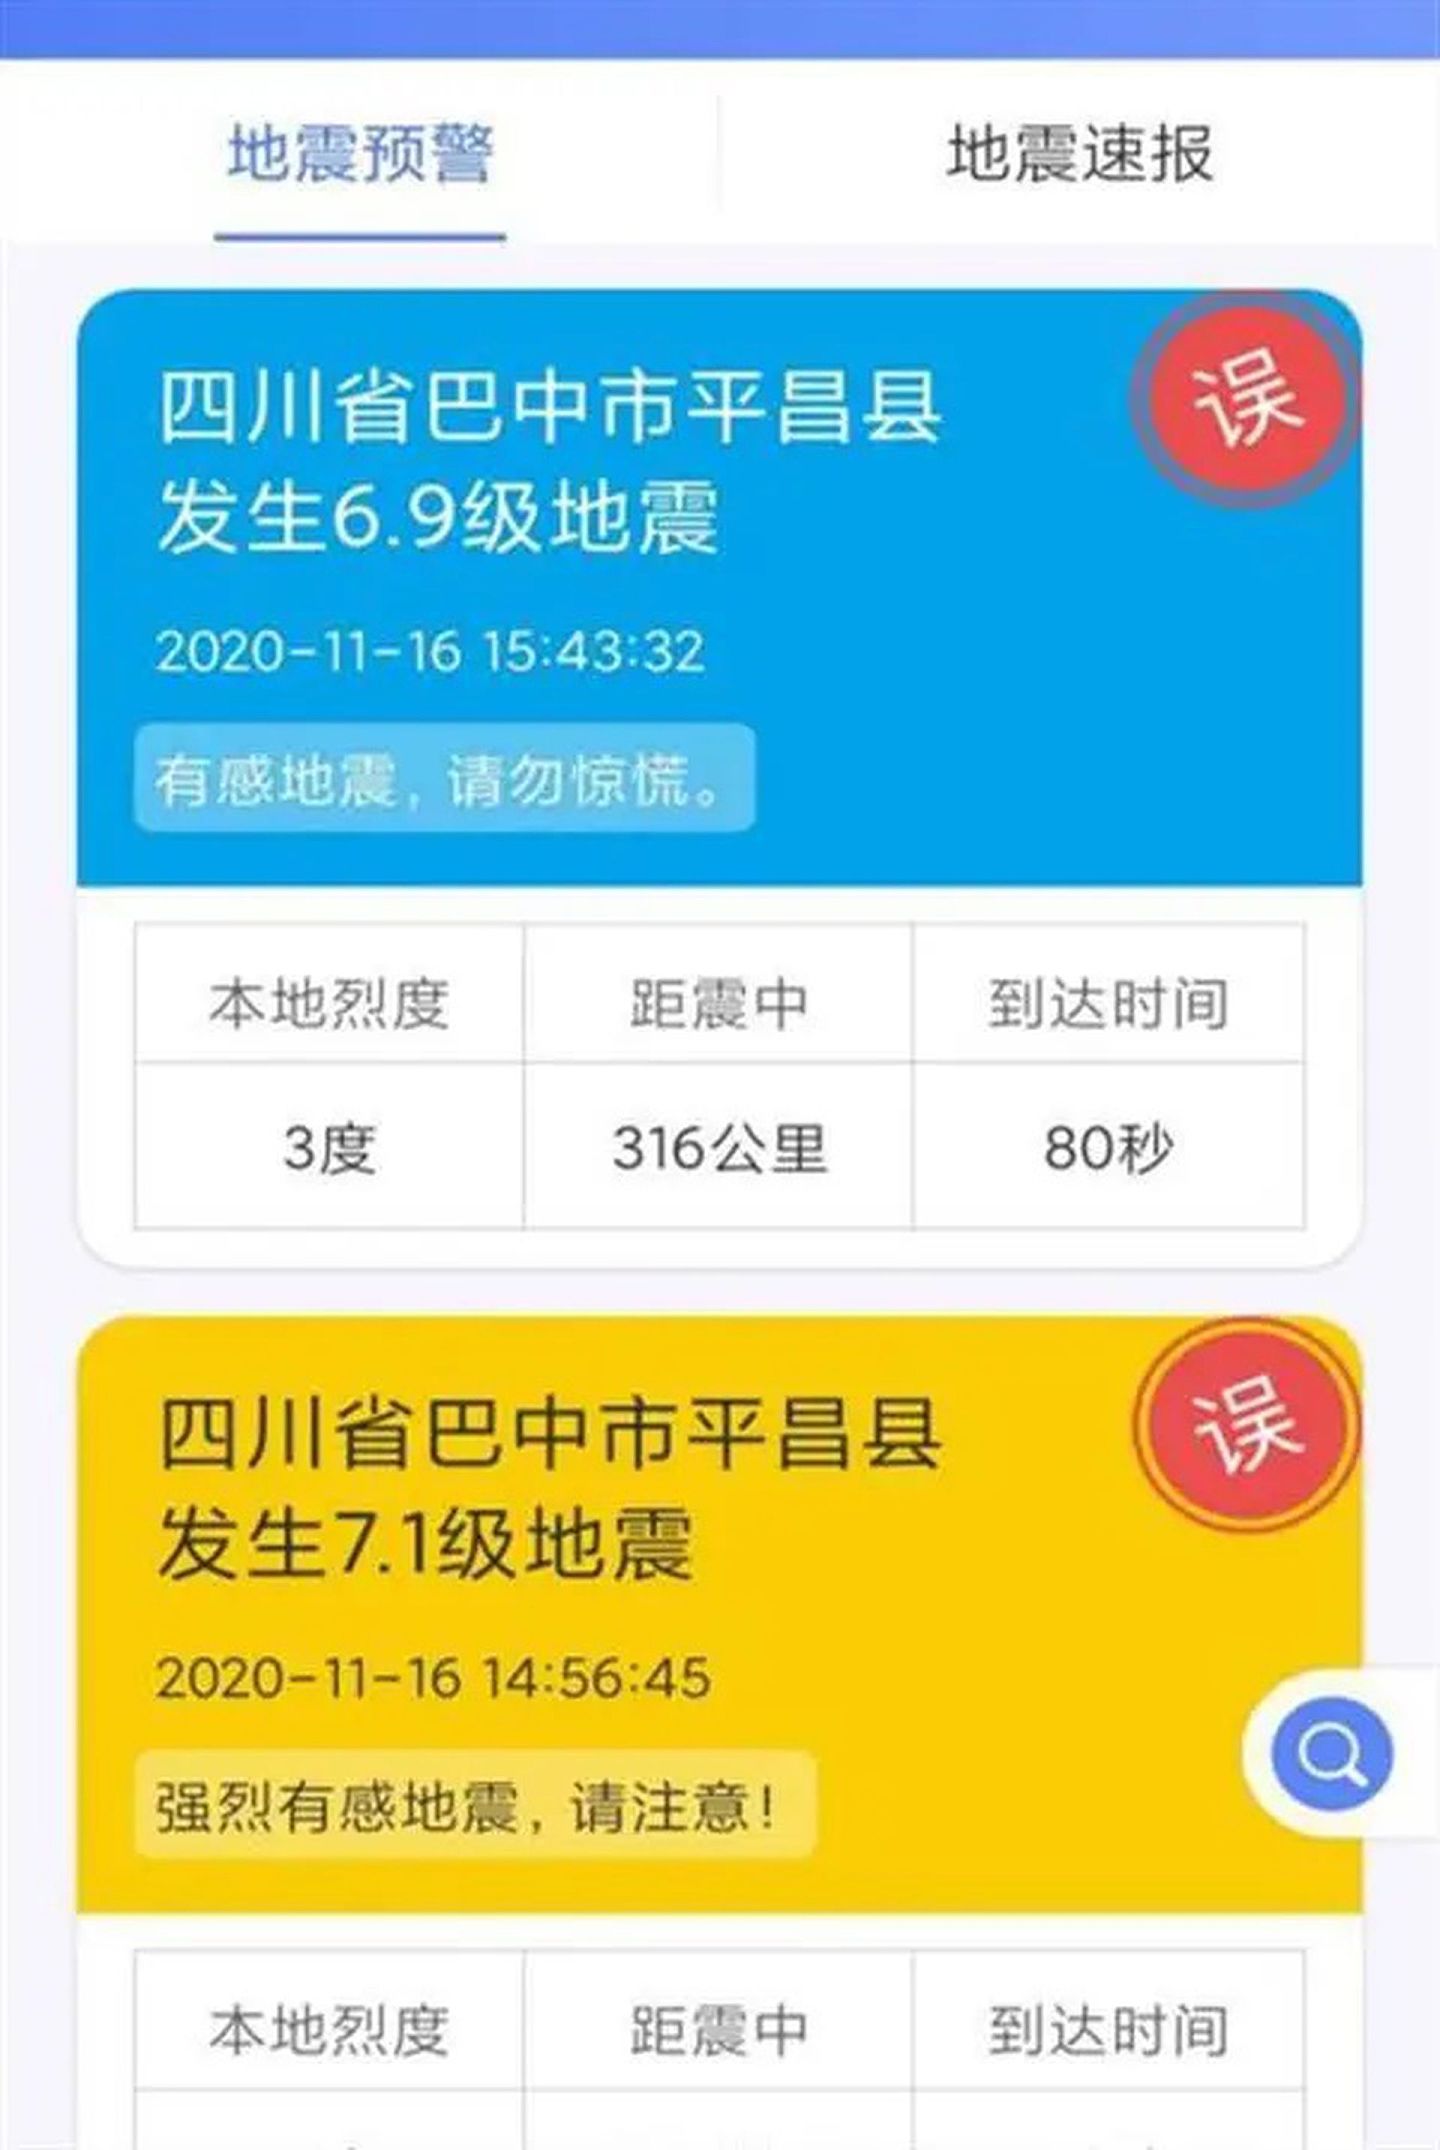 四川省地震局的地震预警App此前亦曾发生过多次误报。（微博@四川省地震局）